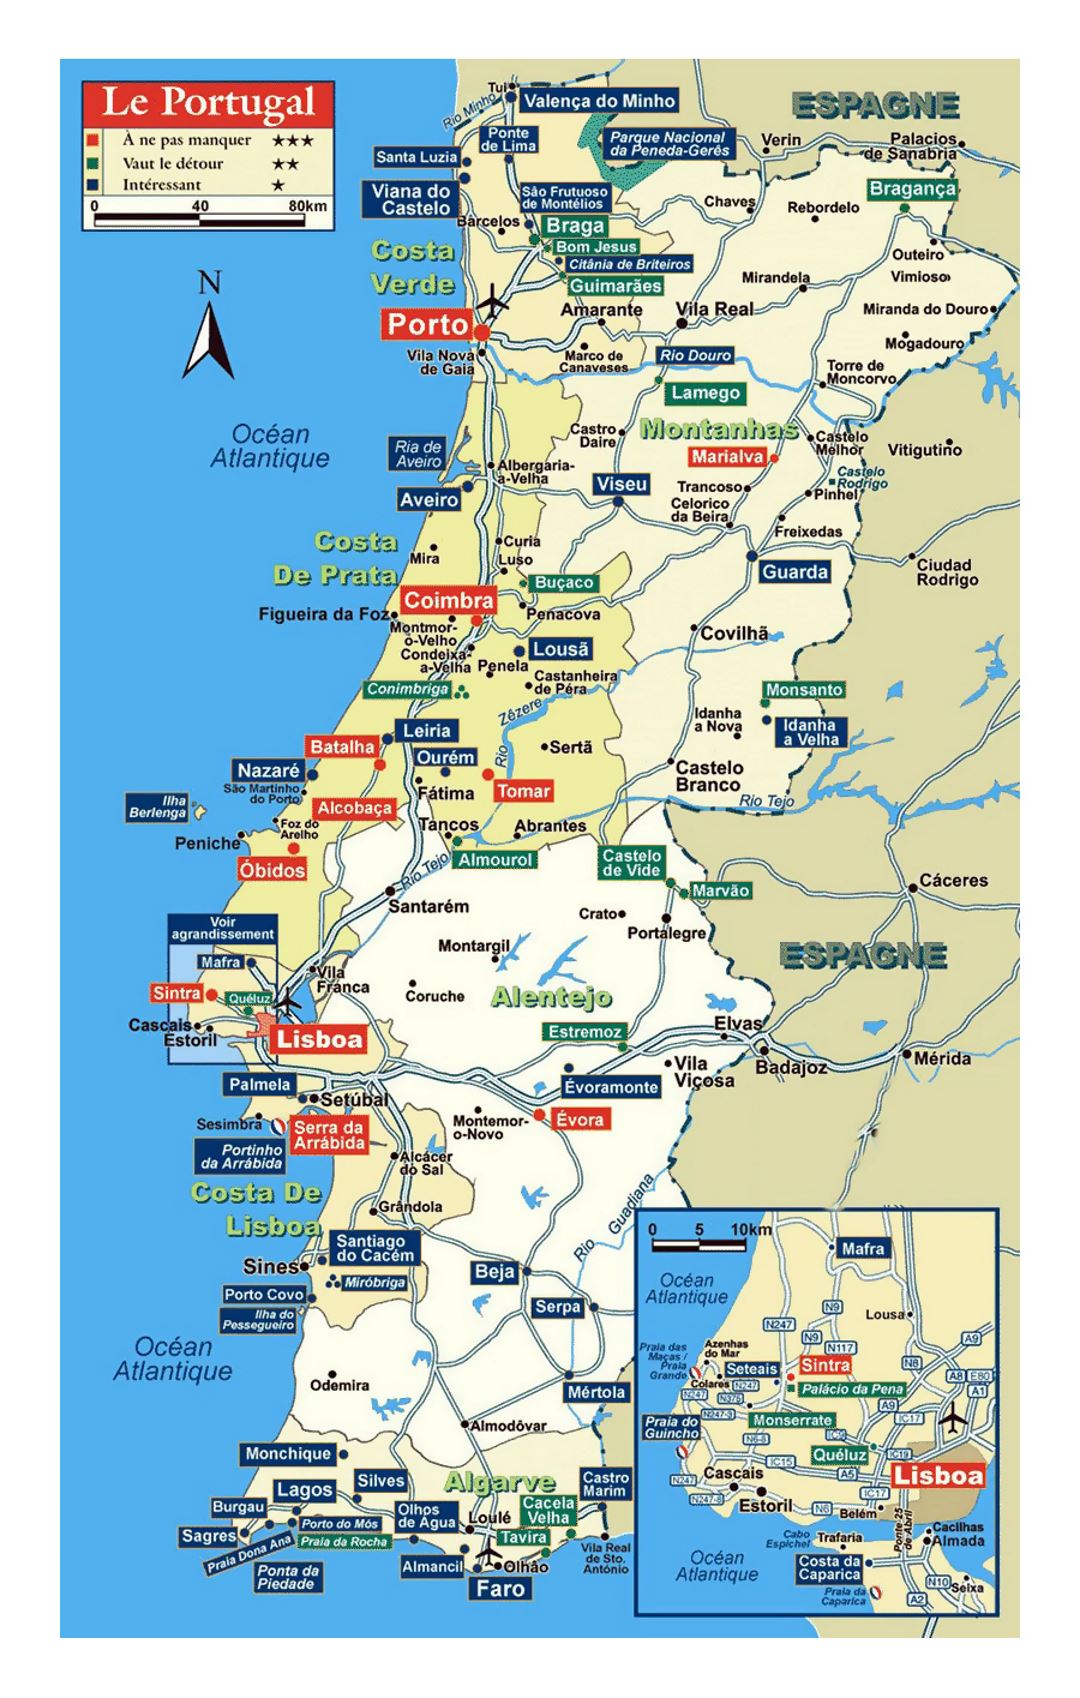 Детальная карта Португалии с дорогами и другими пометками